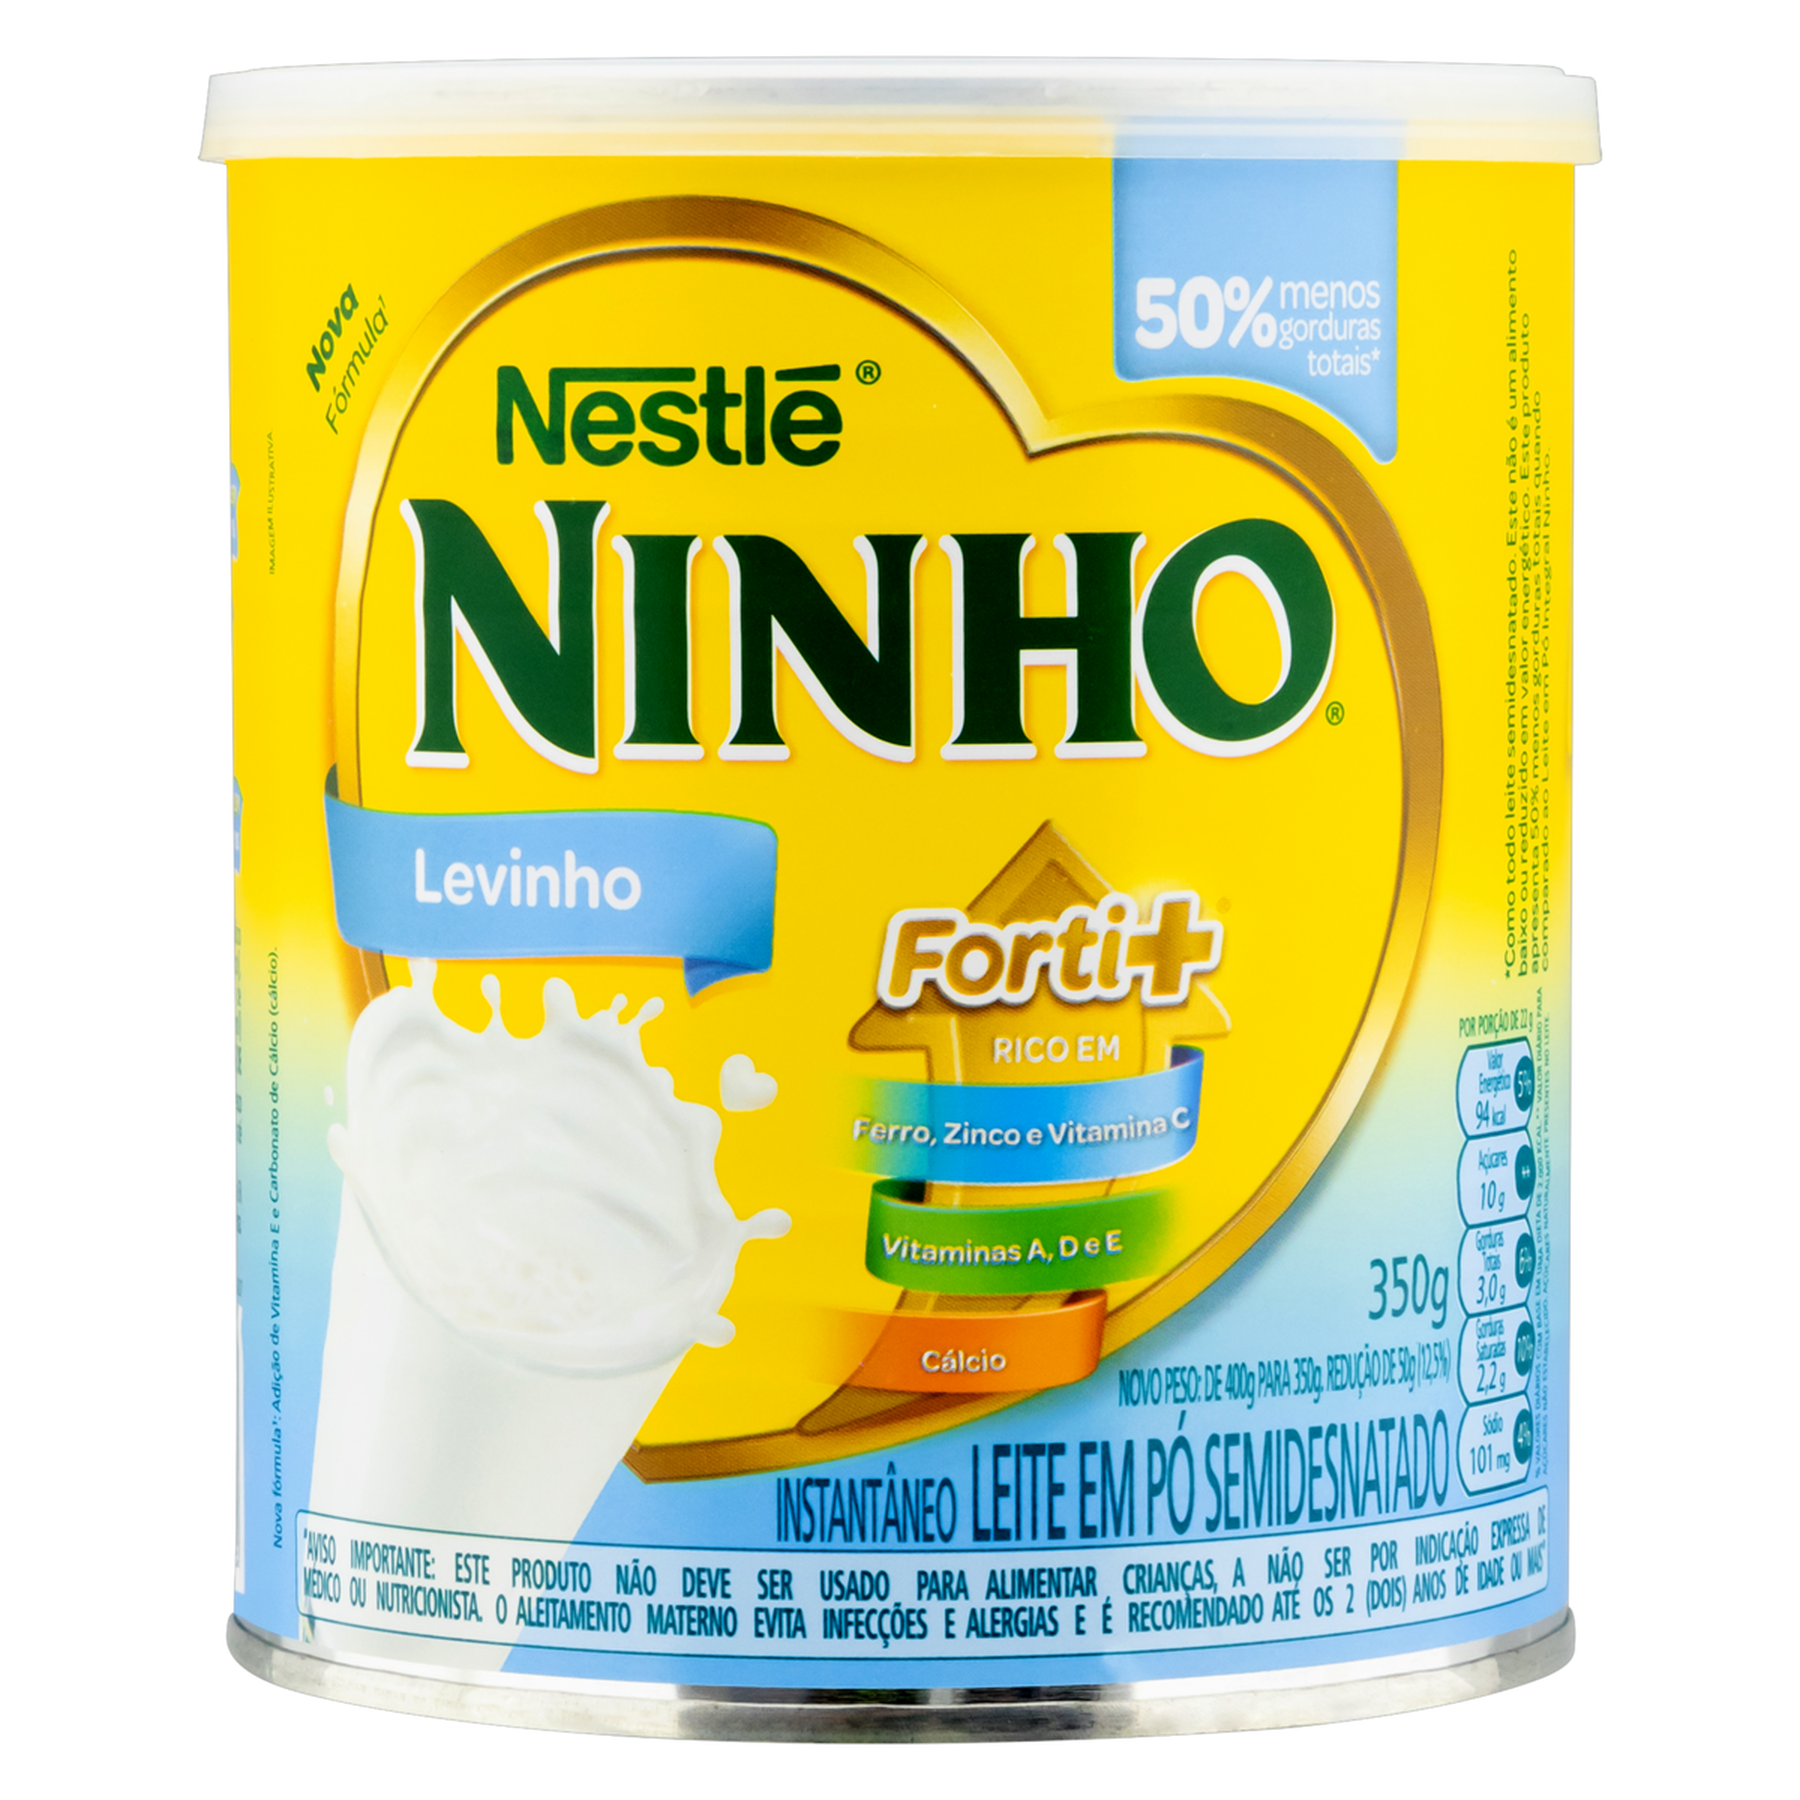 Leite em Pó Instantâneo Semidesnatado Levinho Ninho Forti+ Nestlé Lata 350g